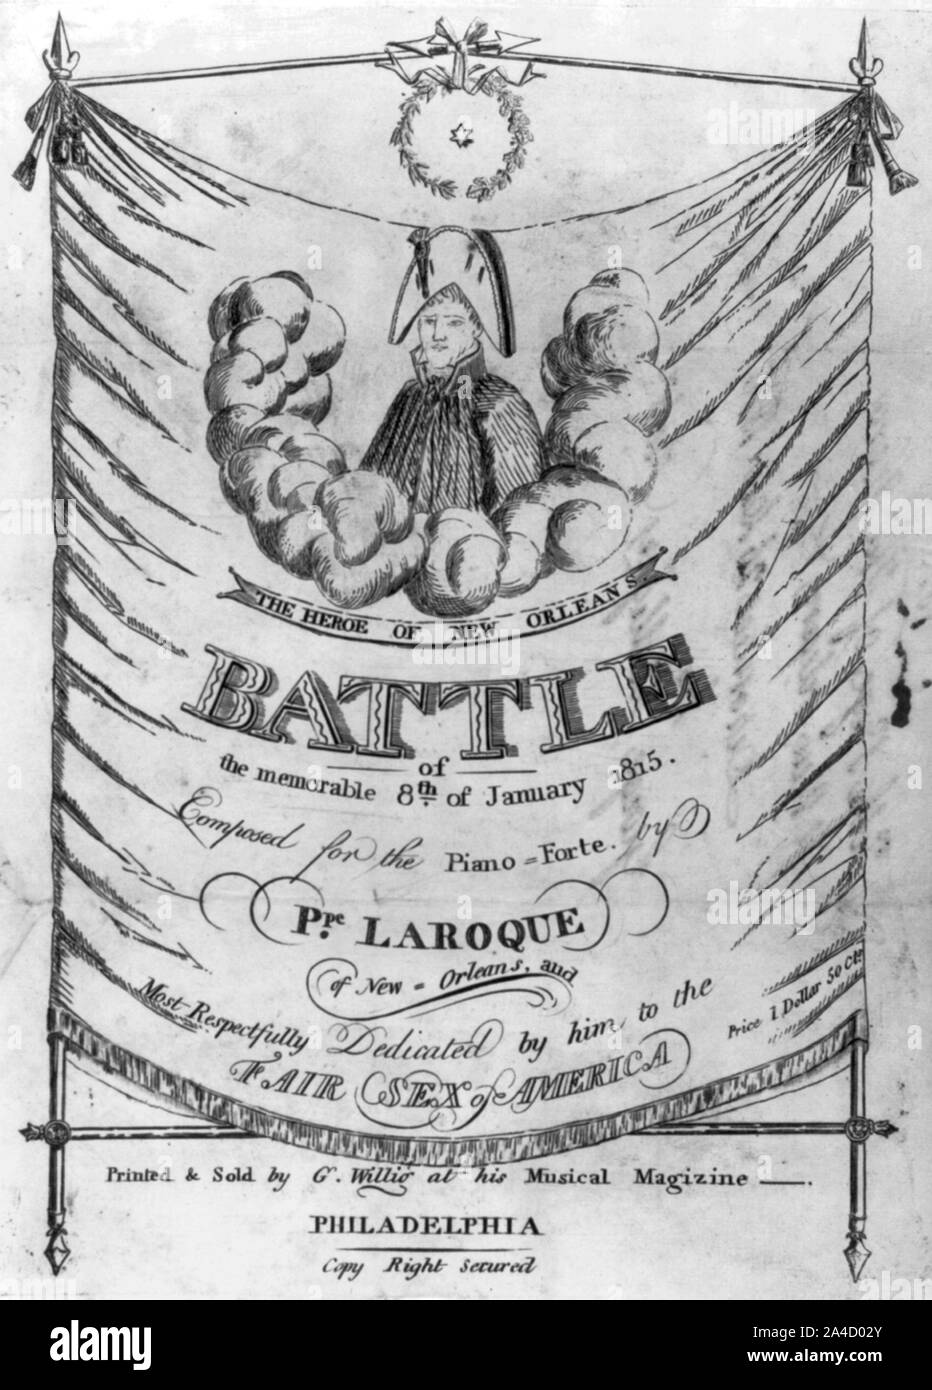 Der Held von New Orleans Schlacht der denkwürdigen 8. Januar 1815 -... von S. Laroque Stockfoto